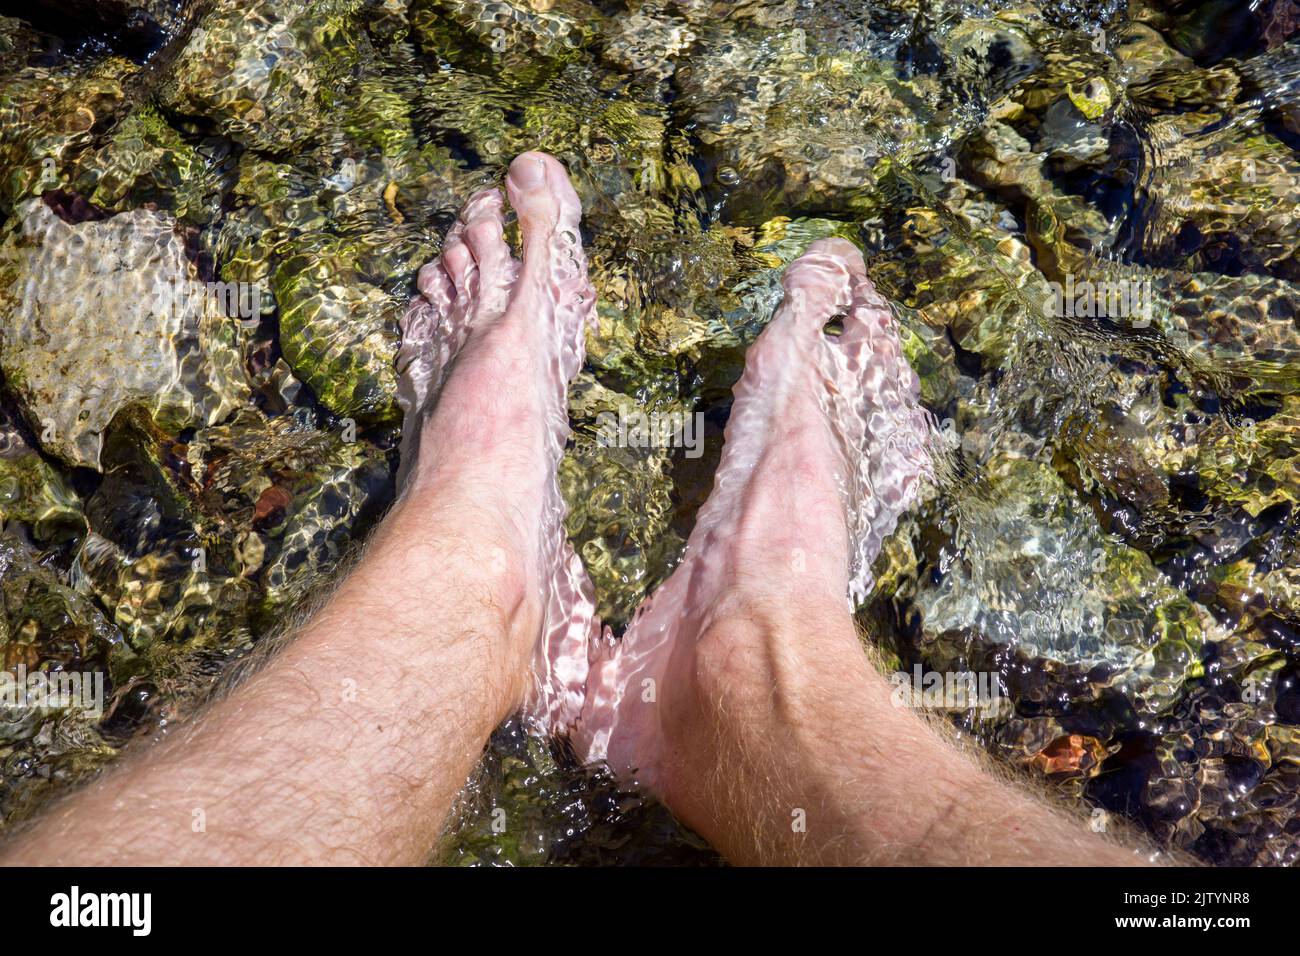 Männliche Füße in das klare Wasser eines Bergstroms eingetaucht. Abkühlung an einem heißen Tag. Stockfoto